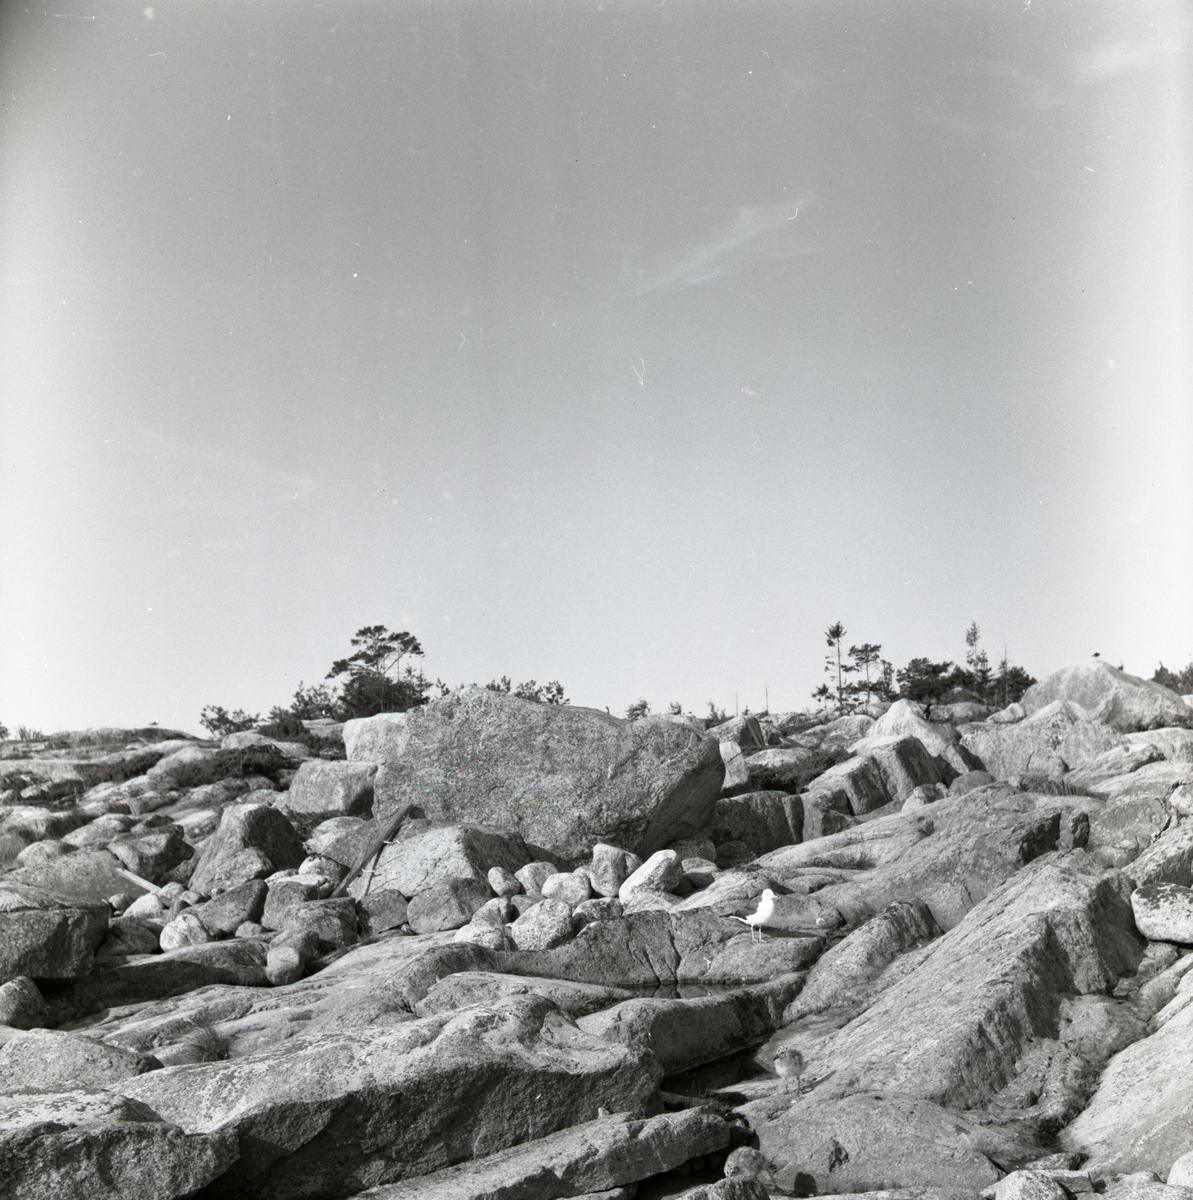 En mås står med sina ungar på några stenhällar vid Granön, augusti 1953.